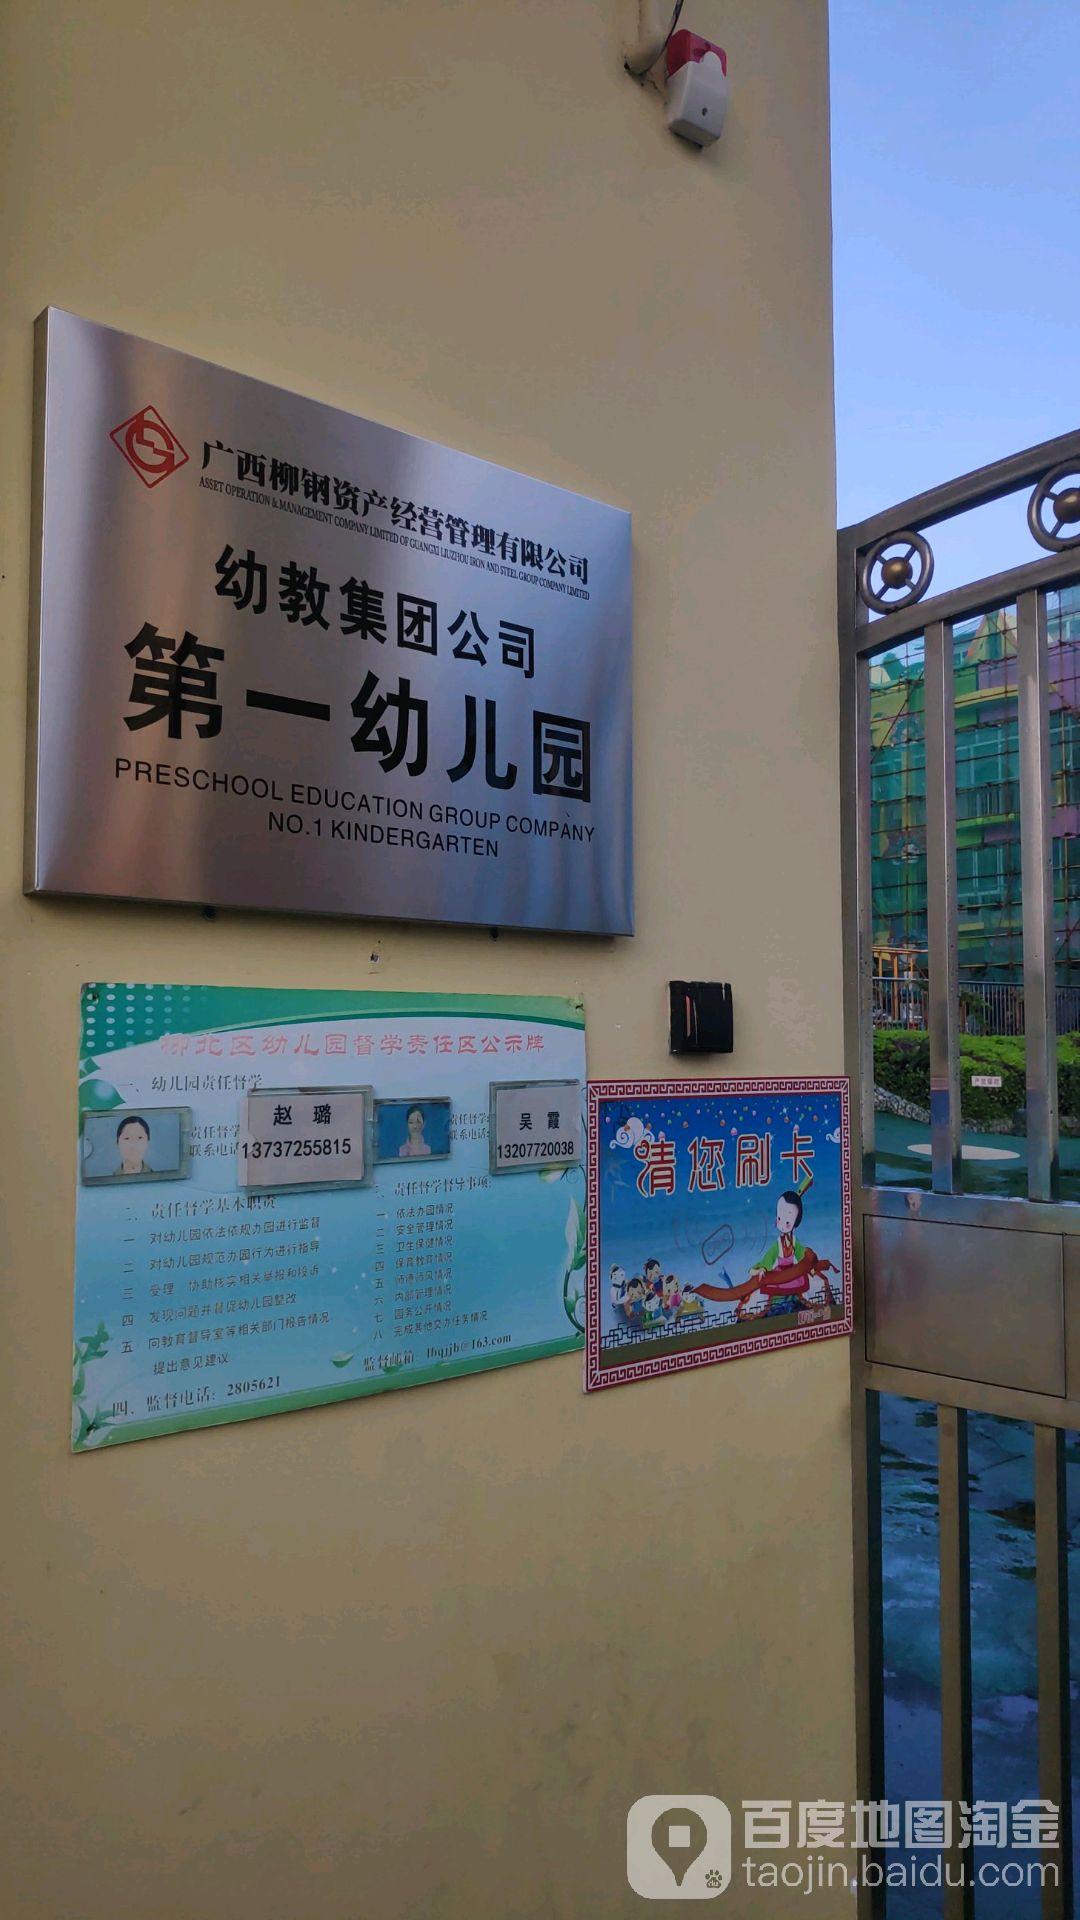 广西柳州钢铁(集团)公司物业管理公司第一幼儿园的图片